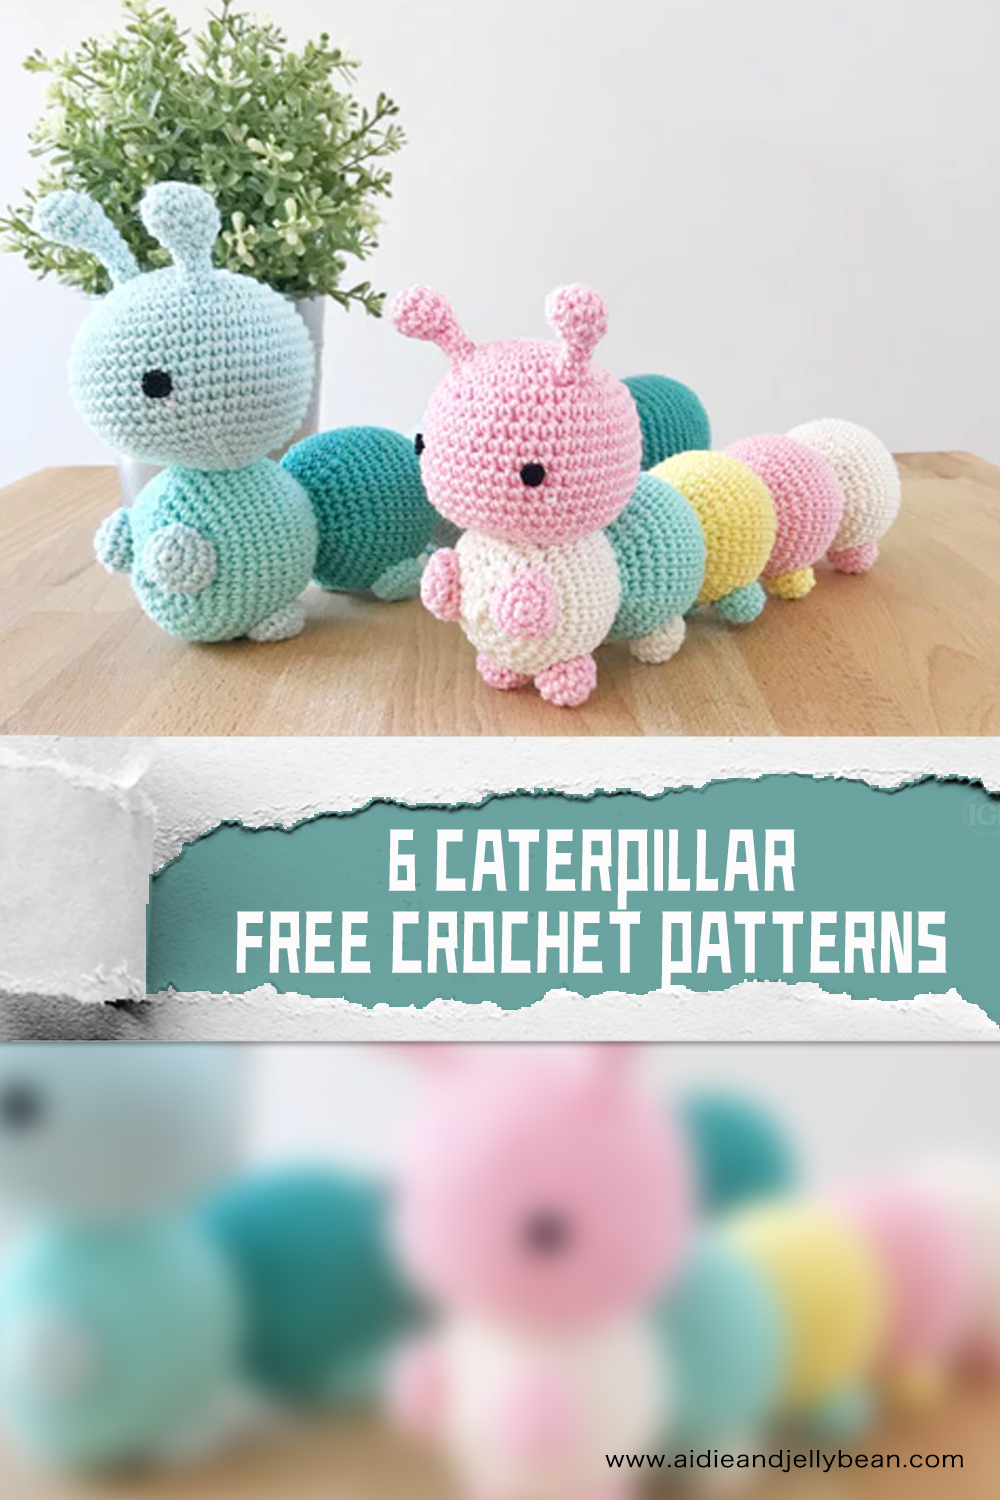 6 FREE Caterpillar Crochet Patterns